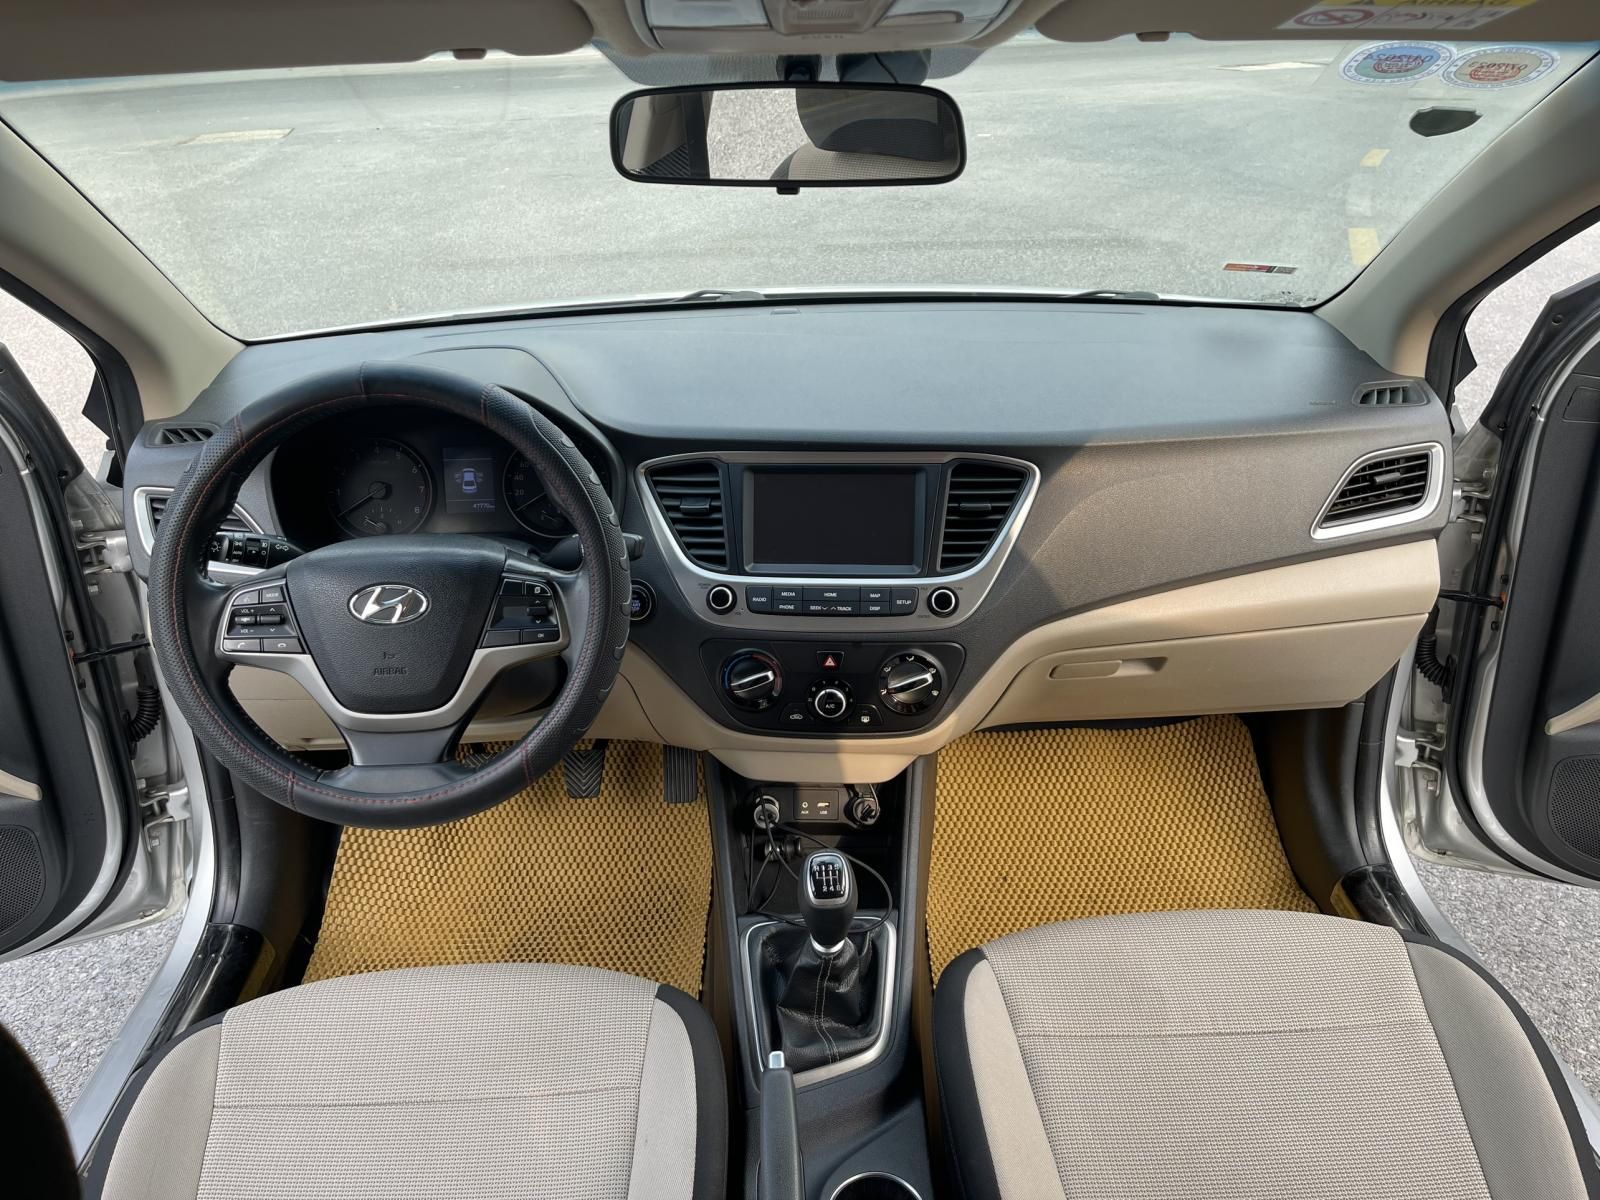 Hyundai Accent 2018 - Bản đủ: Khóa đề nổ start, màn hình, lazang đúc - Xe thơm mùi nỉ